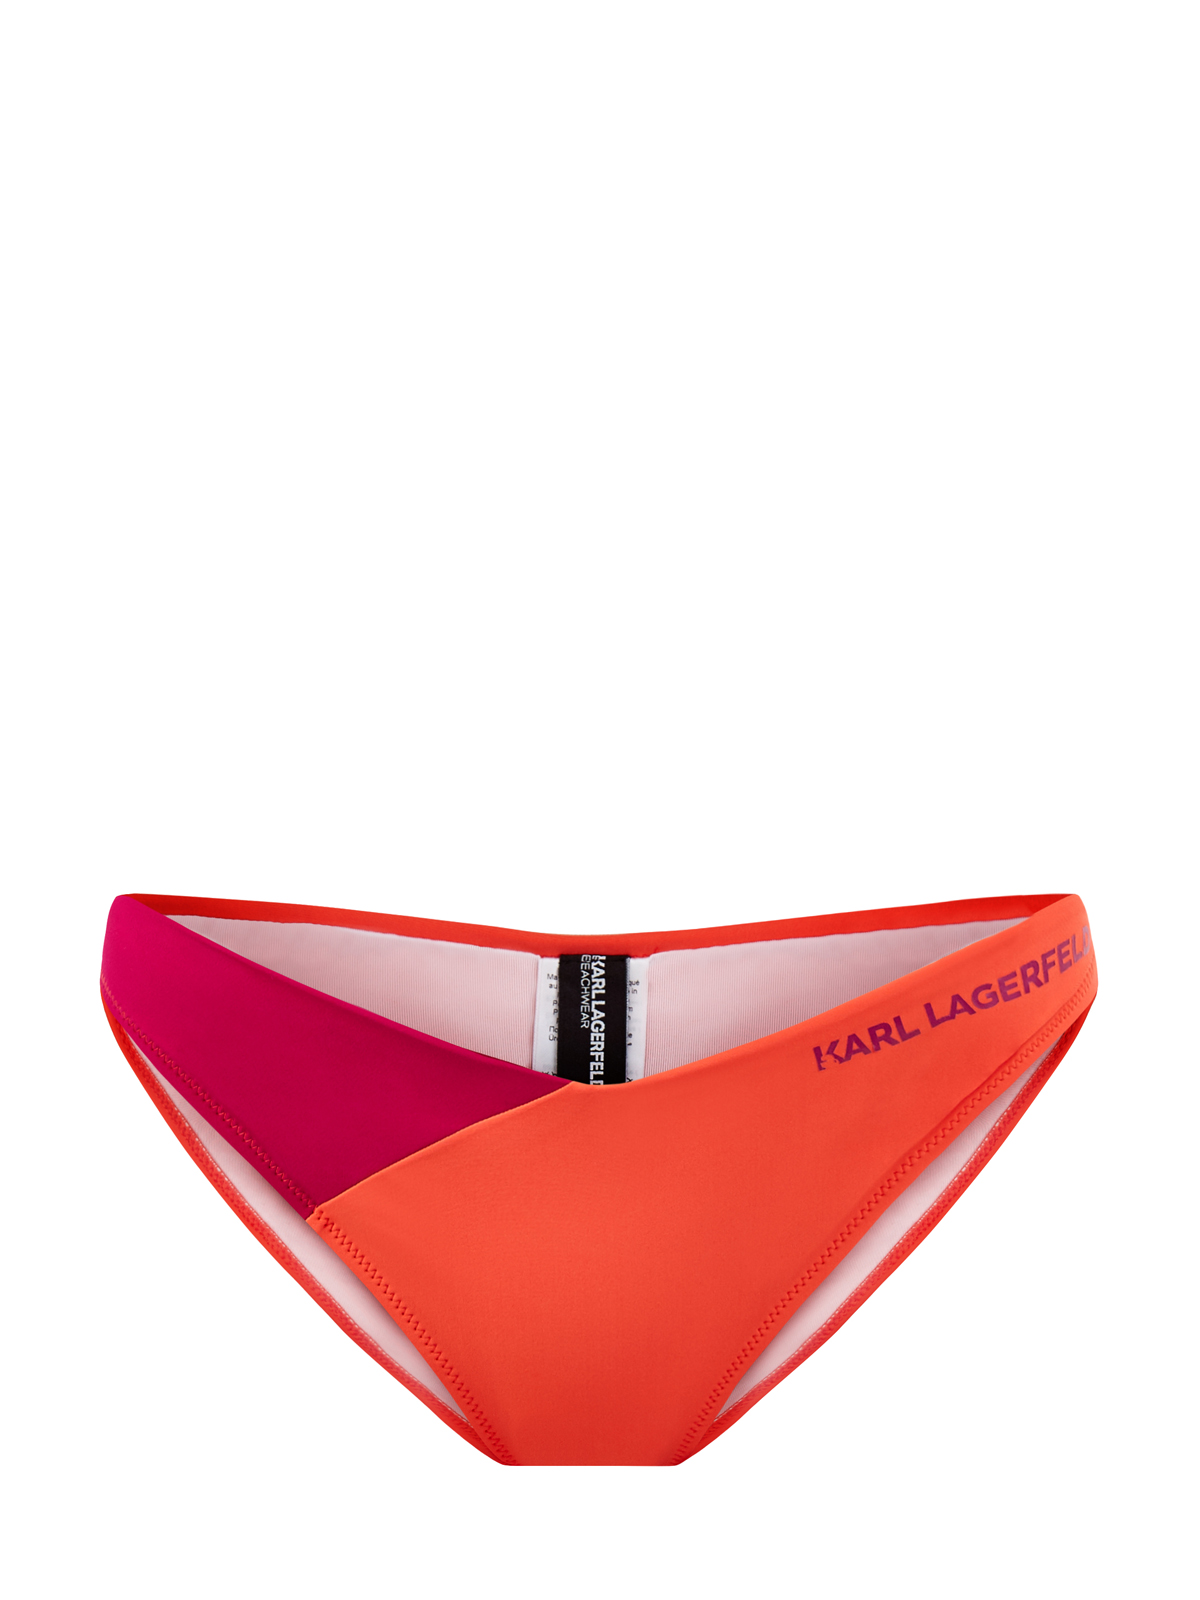 Бикини в стиле colorblock из быстросохнущей ткани KARL LAGERFELD, цвет оранжевый, размер M;L;S